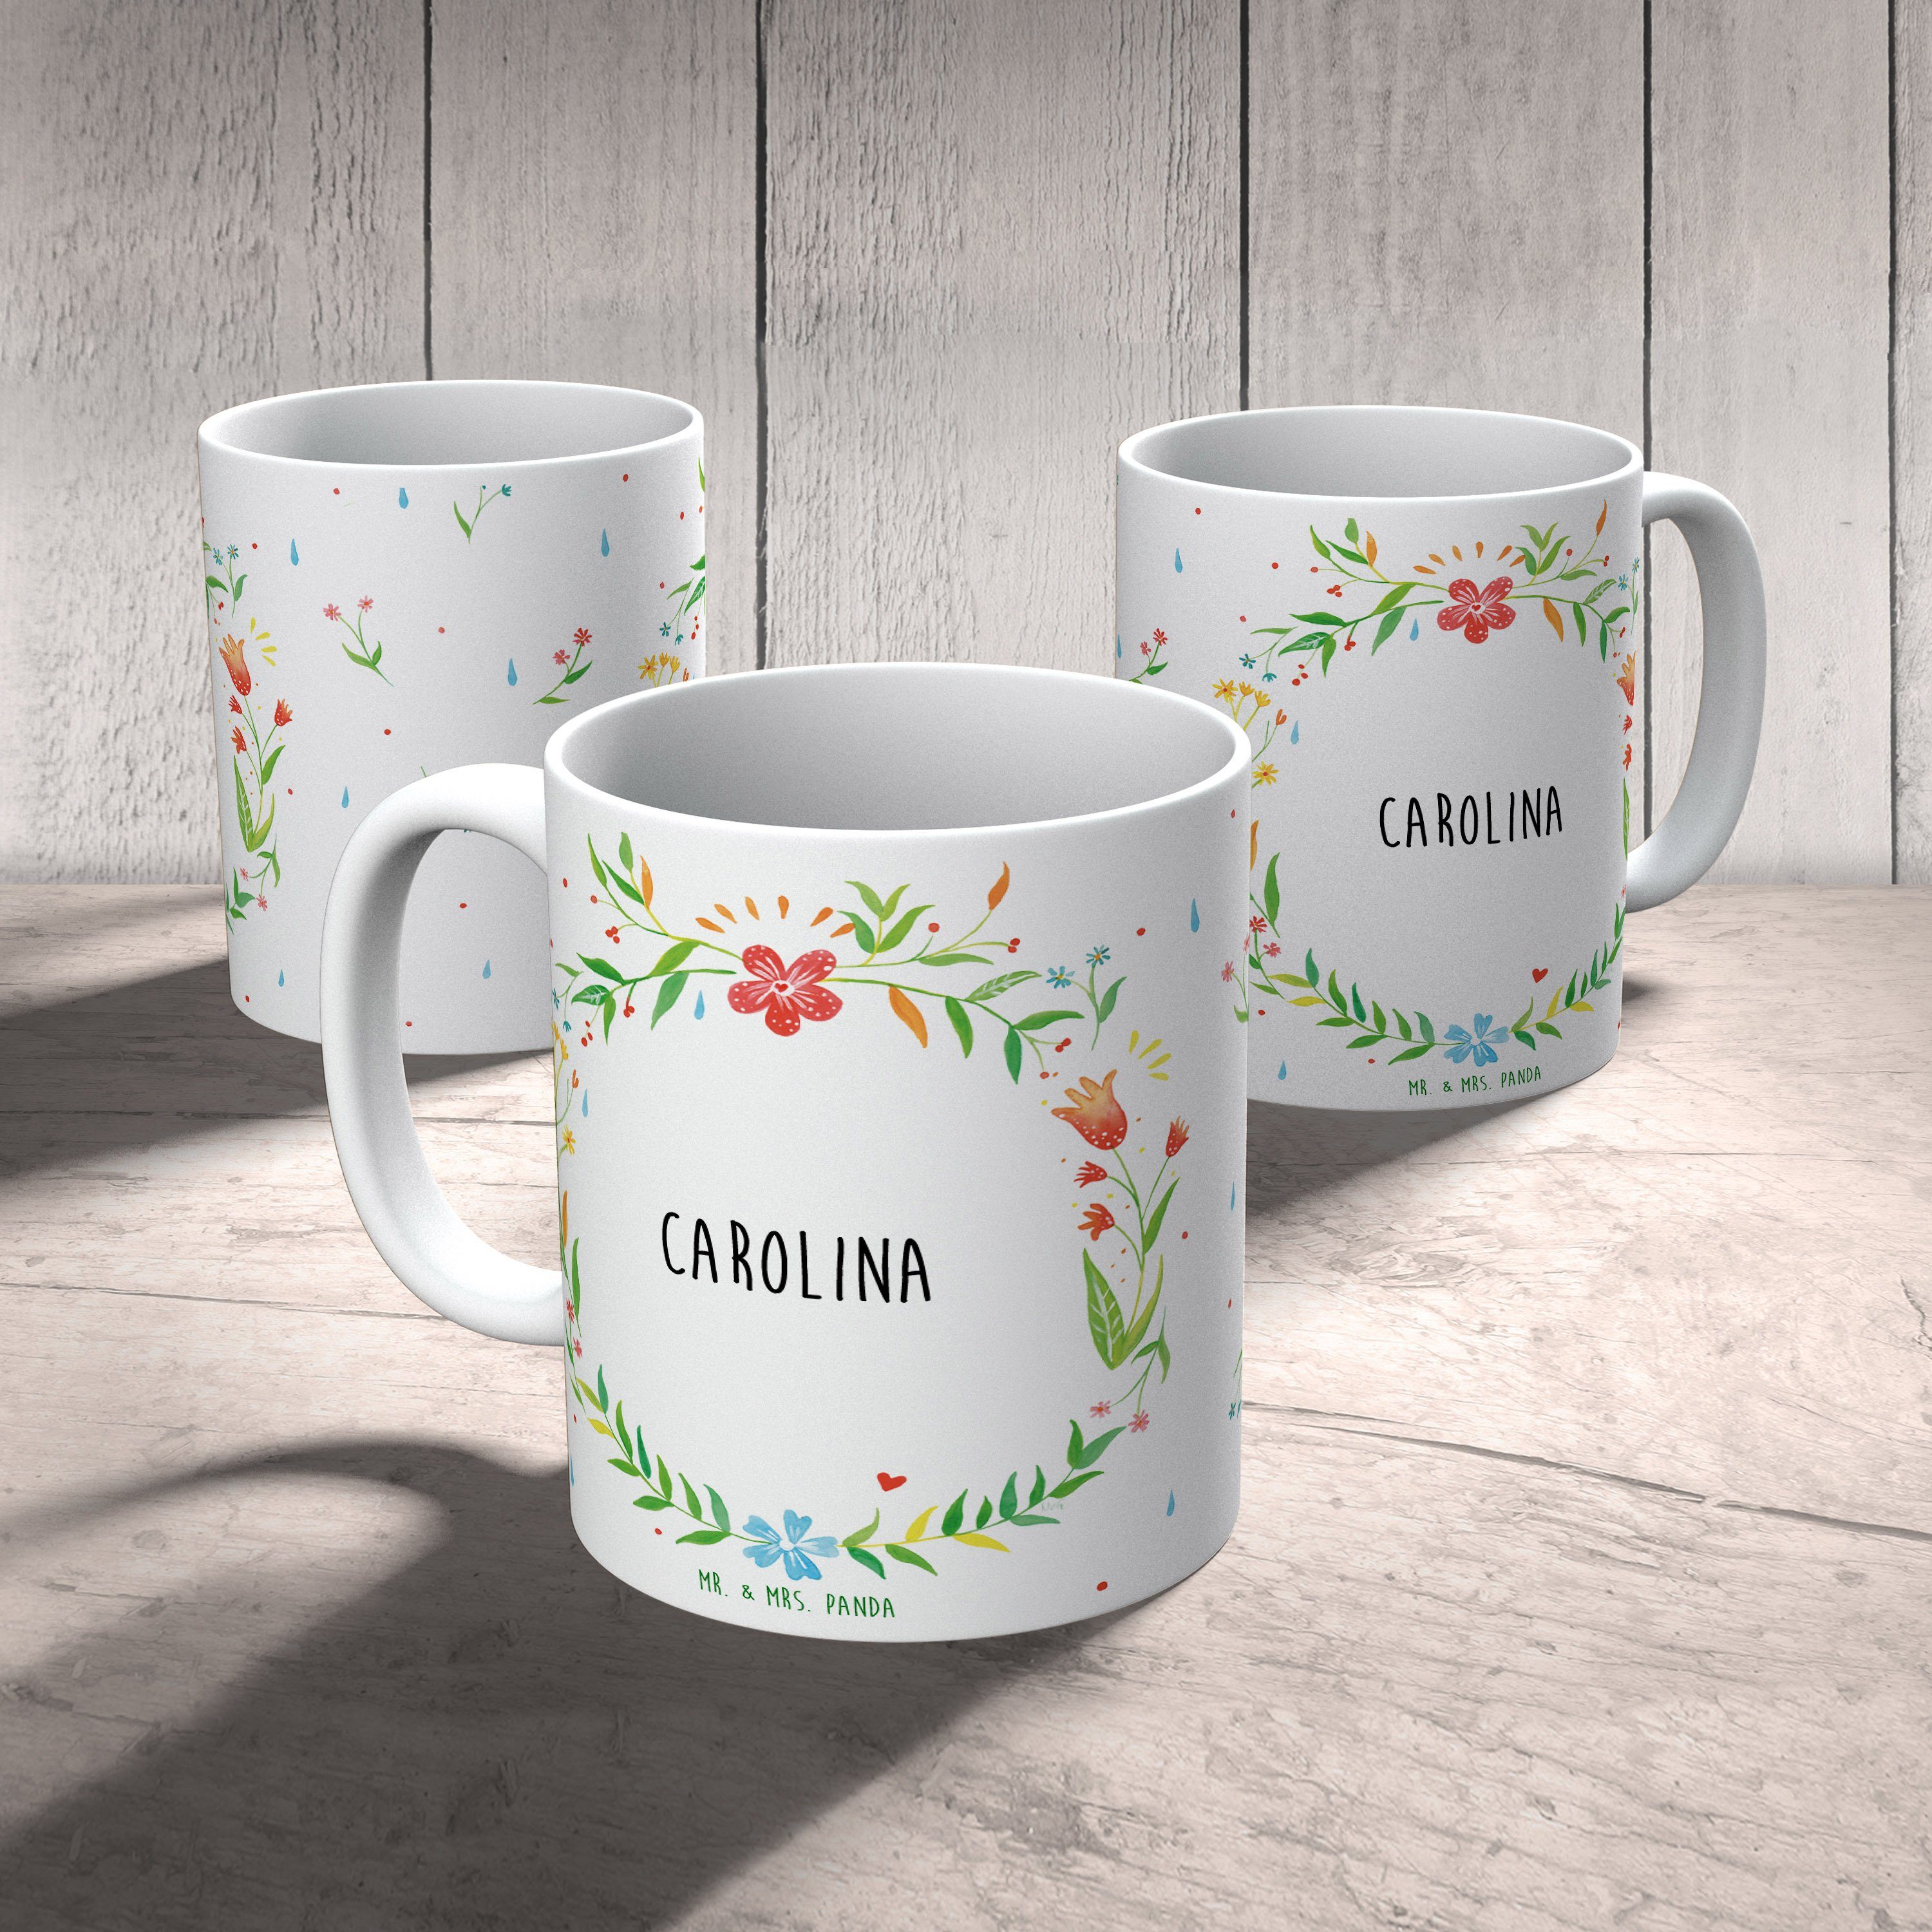 Mr. & Mrs. Carolina Motive, Keramik Tasse Geschenk, Tee, Tasse Geschenk Sprüche, Panda Tasse Tasse, 